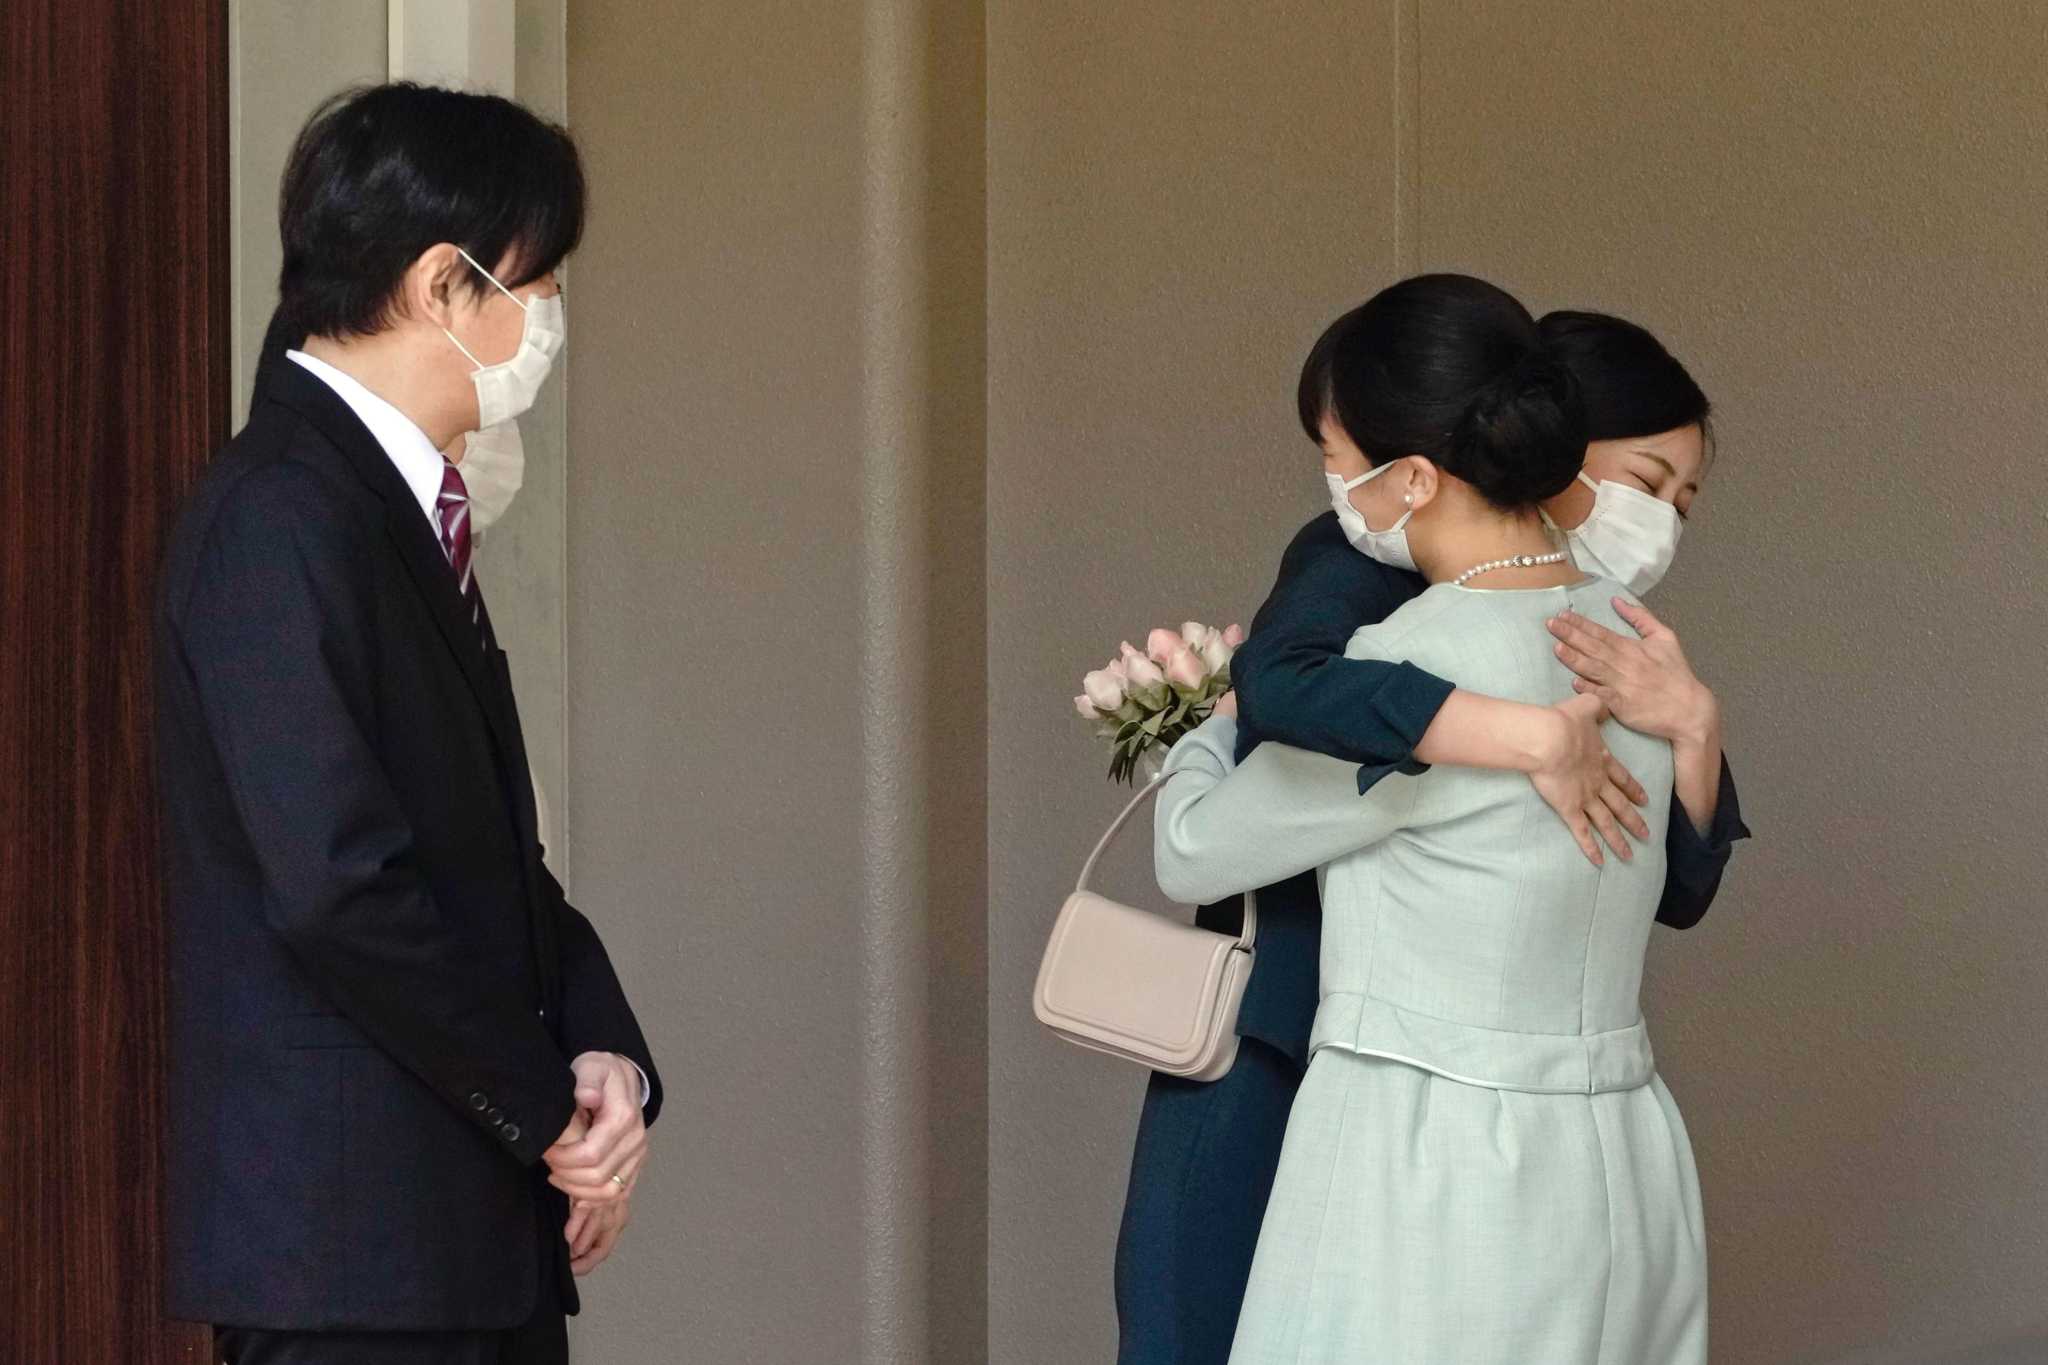 پرنسس ماکو ژاپن در یک مراسم بسیار ساده با دوست دوران دانشجویی خود کی کومورو که از خاندان سلطنتی نیست ازدواج کرده است